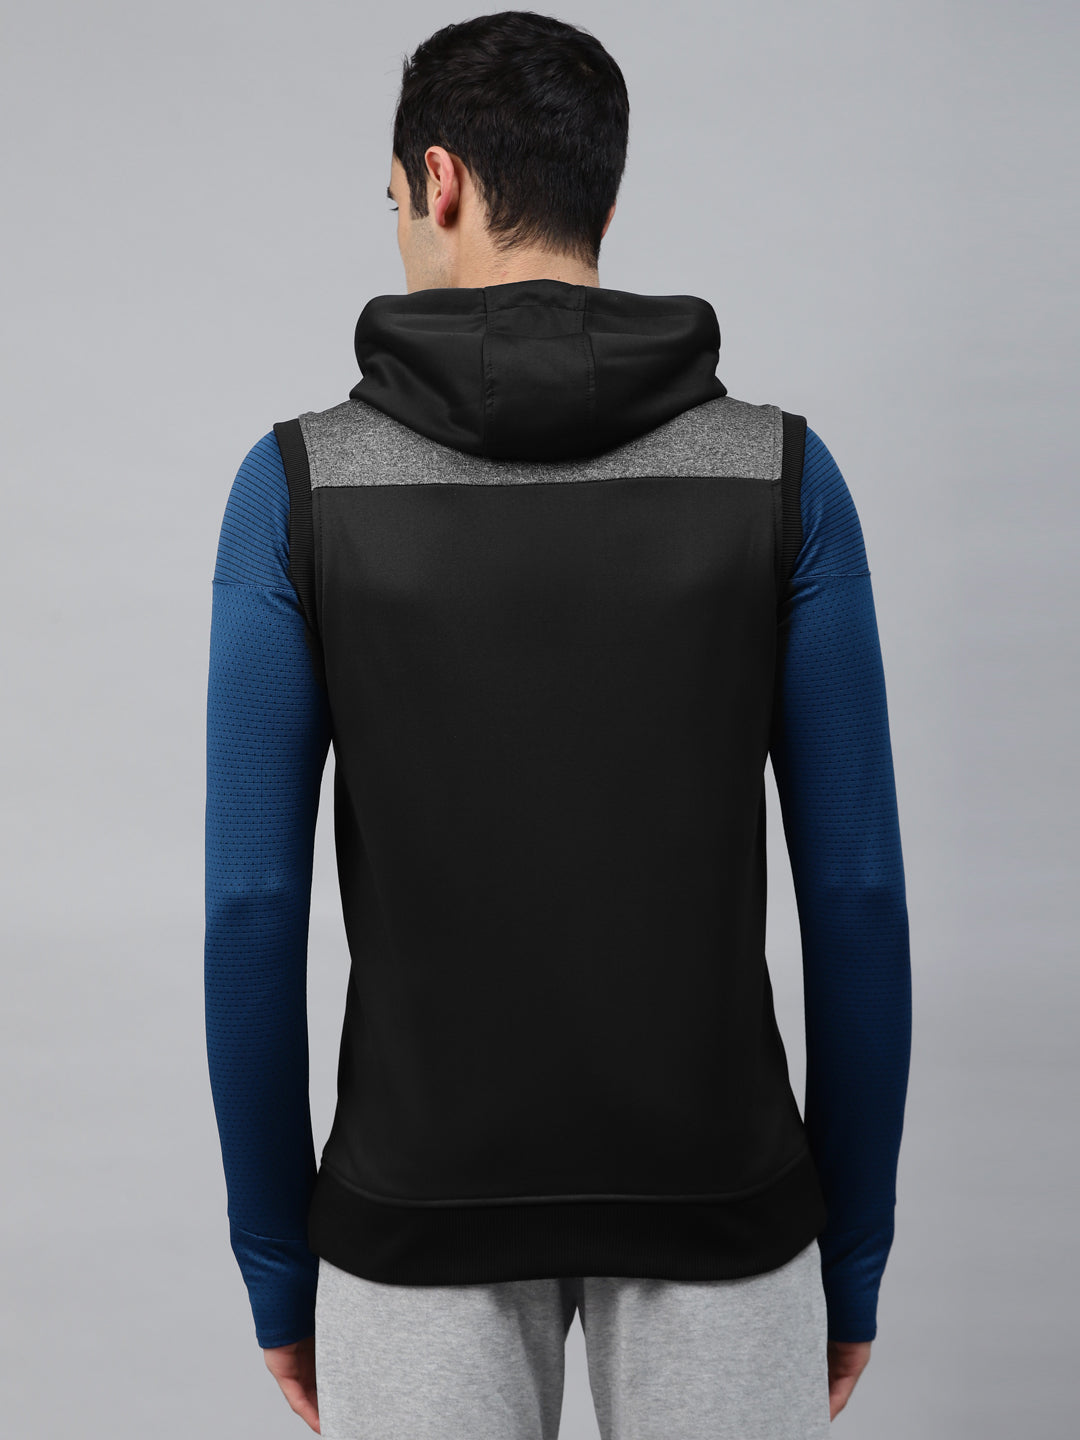 Alcis Men Black Solid Hooded Front-Open Sweatshirt